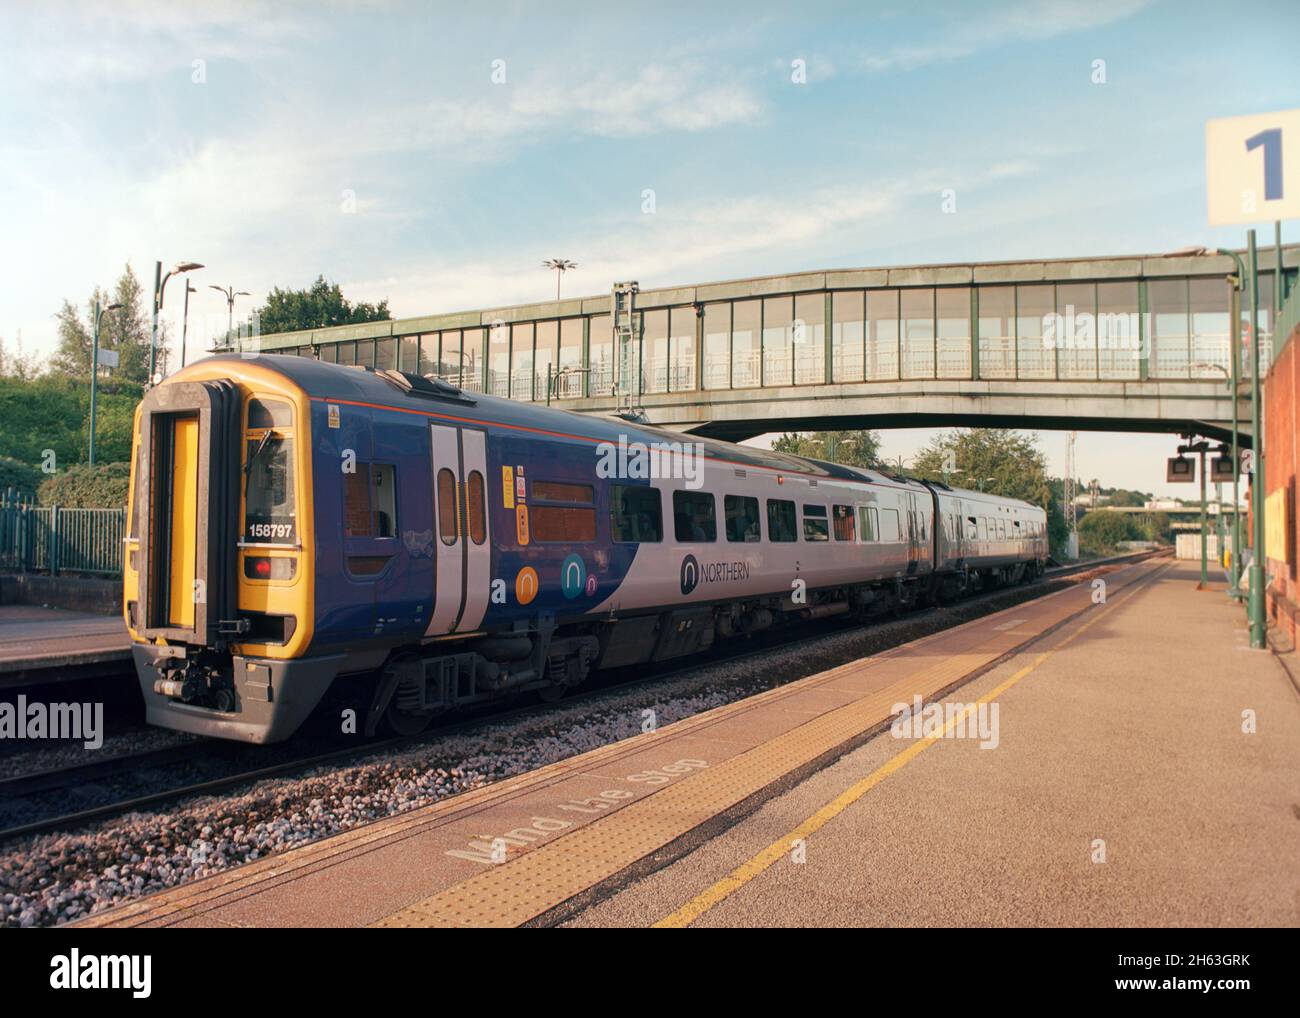 Sheffield, Großbritannien - 23. August 2021: Ein Personenzug (Klasse 158), der von Northern am Bahnhof Meadowhall für den Pendlerverkehr betrieben wird. Stockfoto